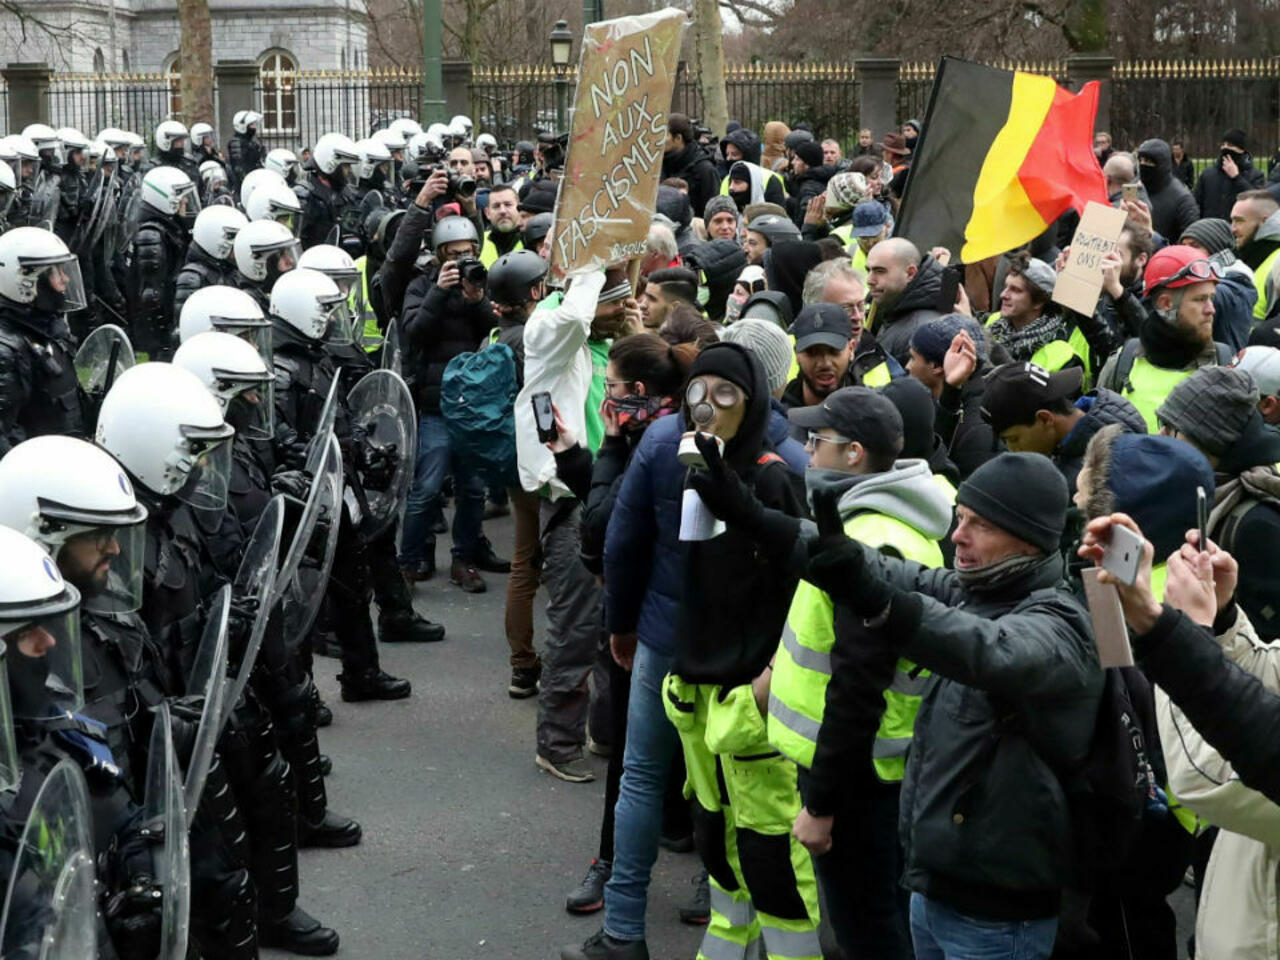 Au fost văzute steaguri olandeze, poloneze, franceze şi româneşti: Protest în Belgia, împotriva restricţiilor sanitare (VIDEO)